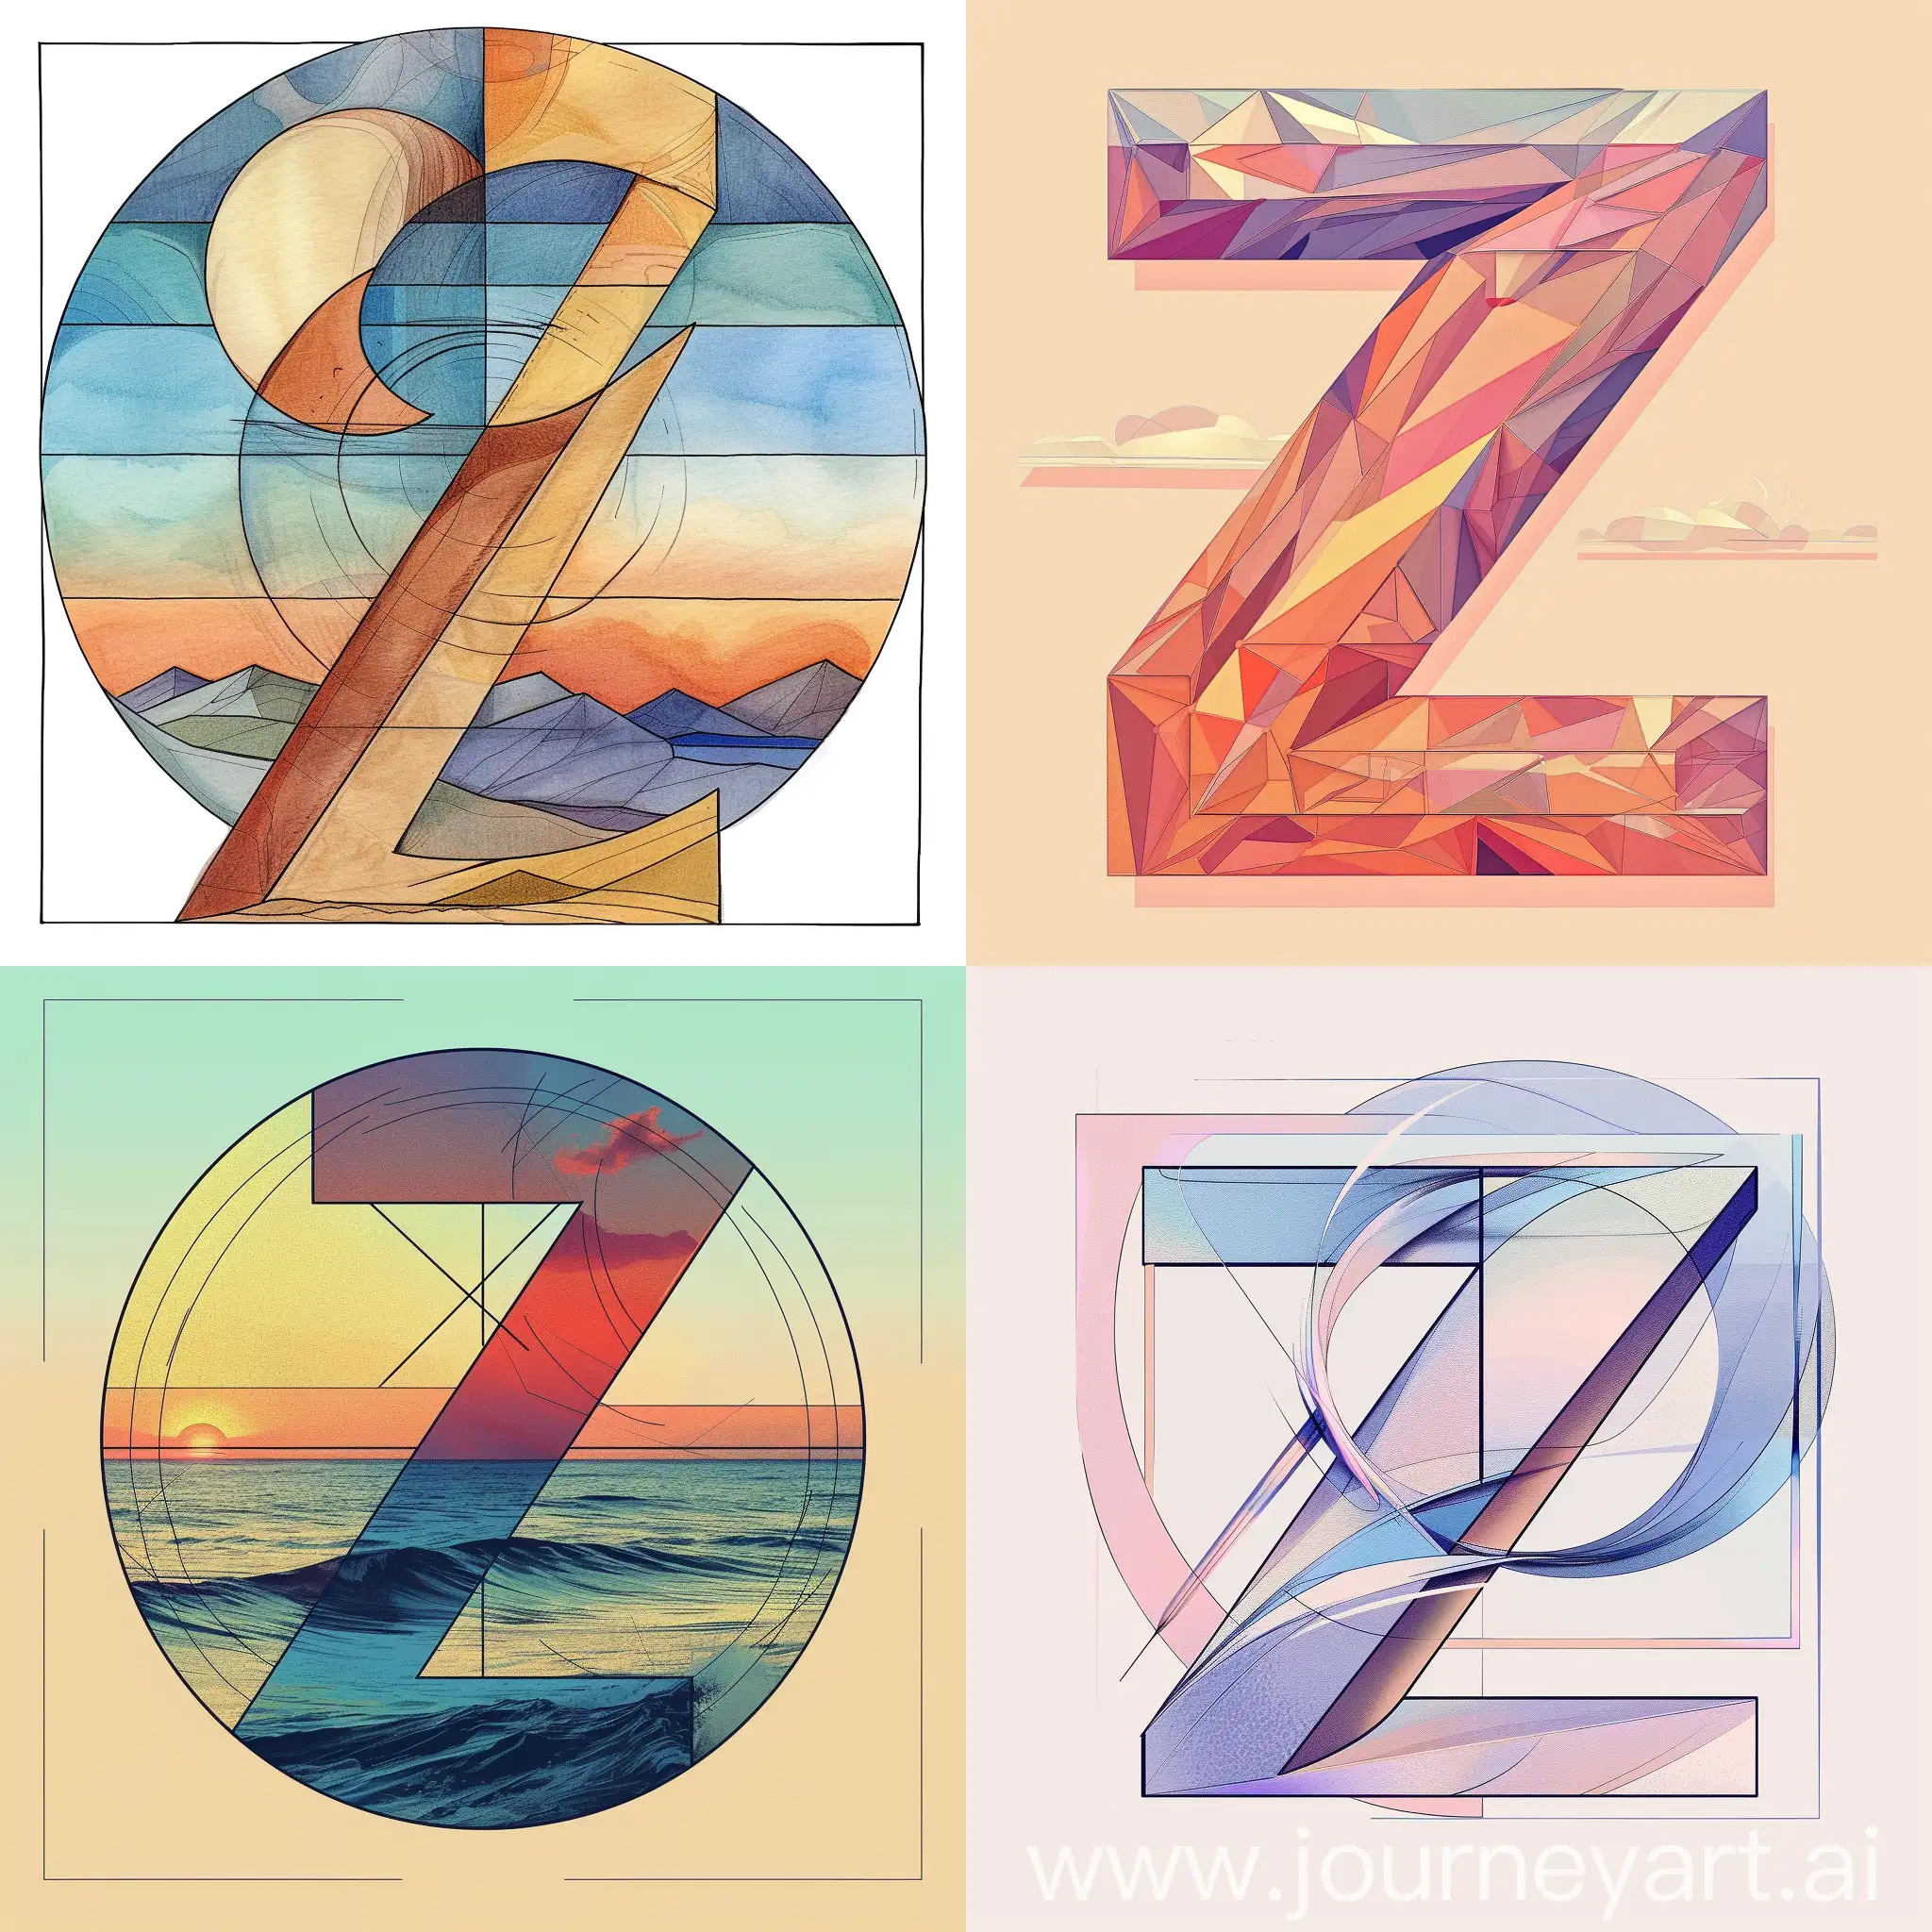 Elegant-Golden-Ratio-Letter-Z-Avatar-on-Harmonious-Background